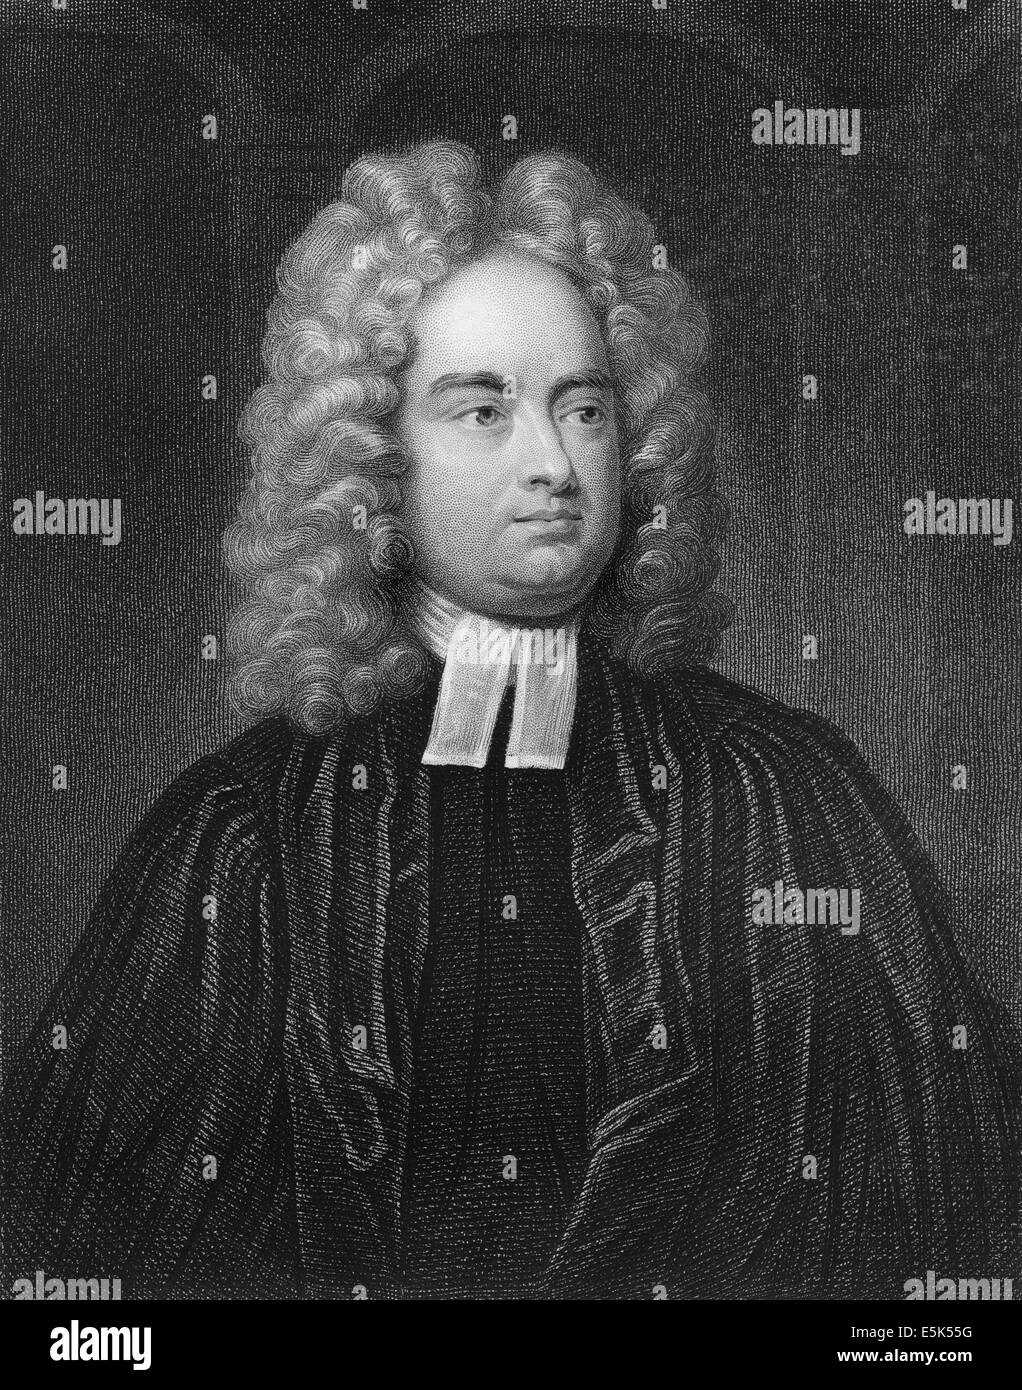 Jonathan Swift o di Isaac Bickerstaff, 1667 - 1745, uno scrittore irlandese e il satiro dei primi illuminismo, autore di Gulliver's Foto Stock